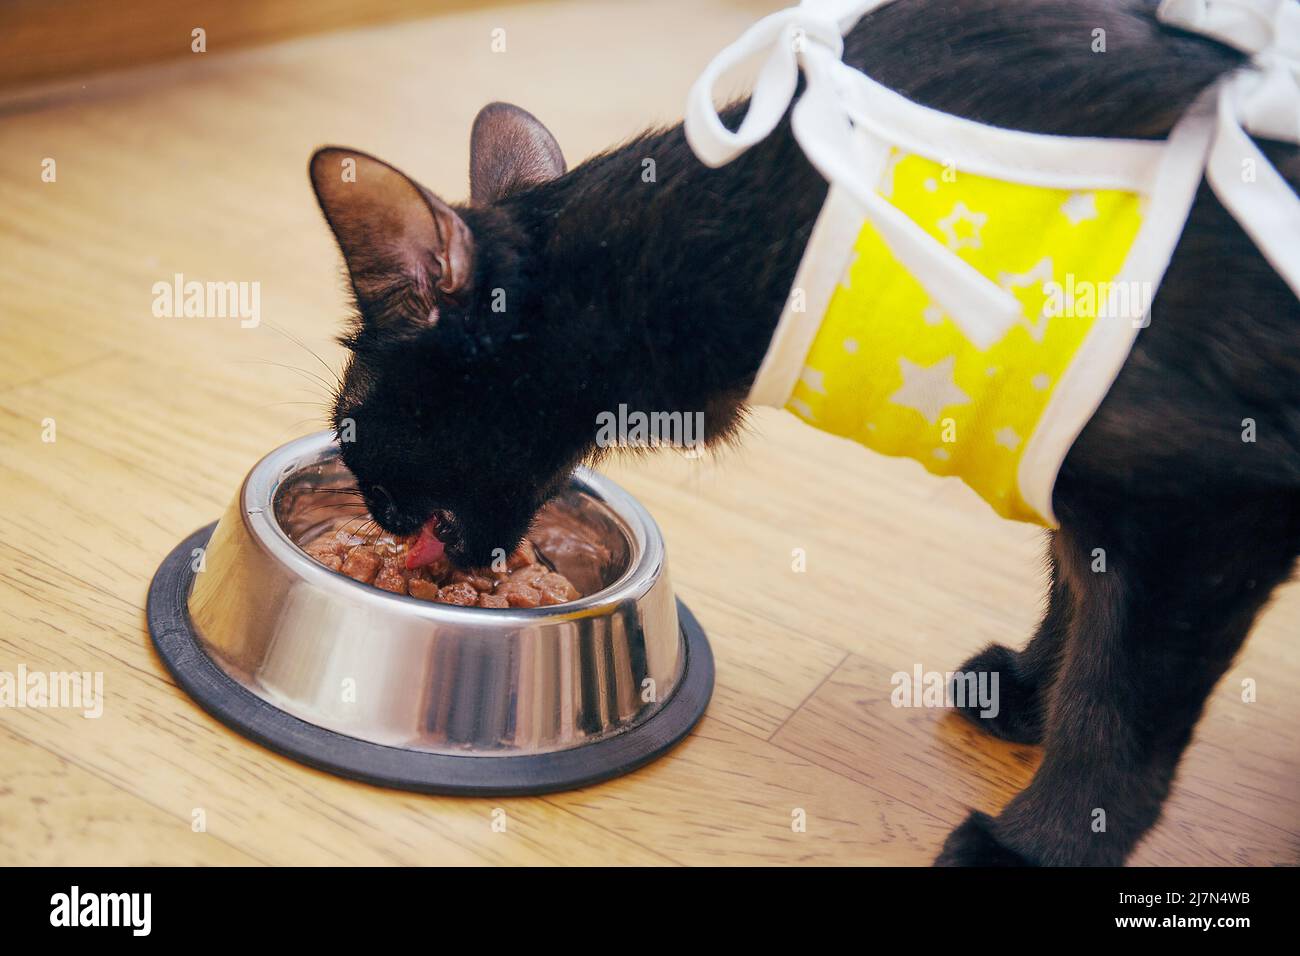 Cuidado de un animal herido después de cirugía veterinaria, castración y esterilización. Un gato en una manta médica después de la cirugía come comida de un tazón de mascota. Foto de stock